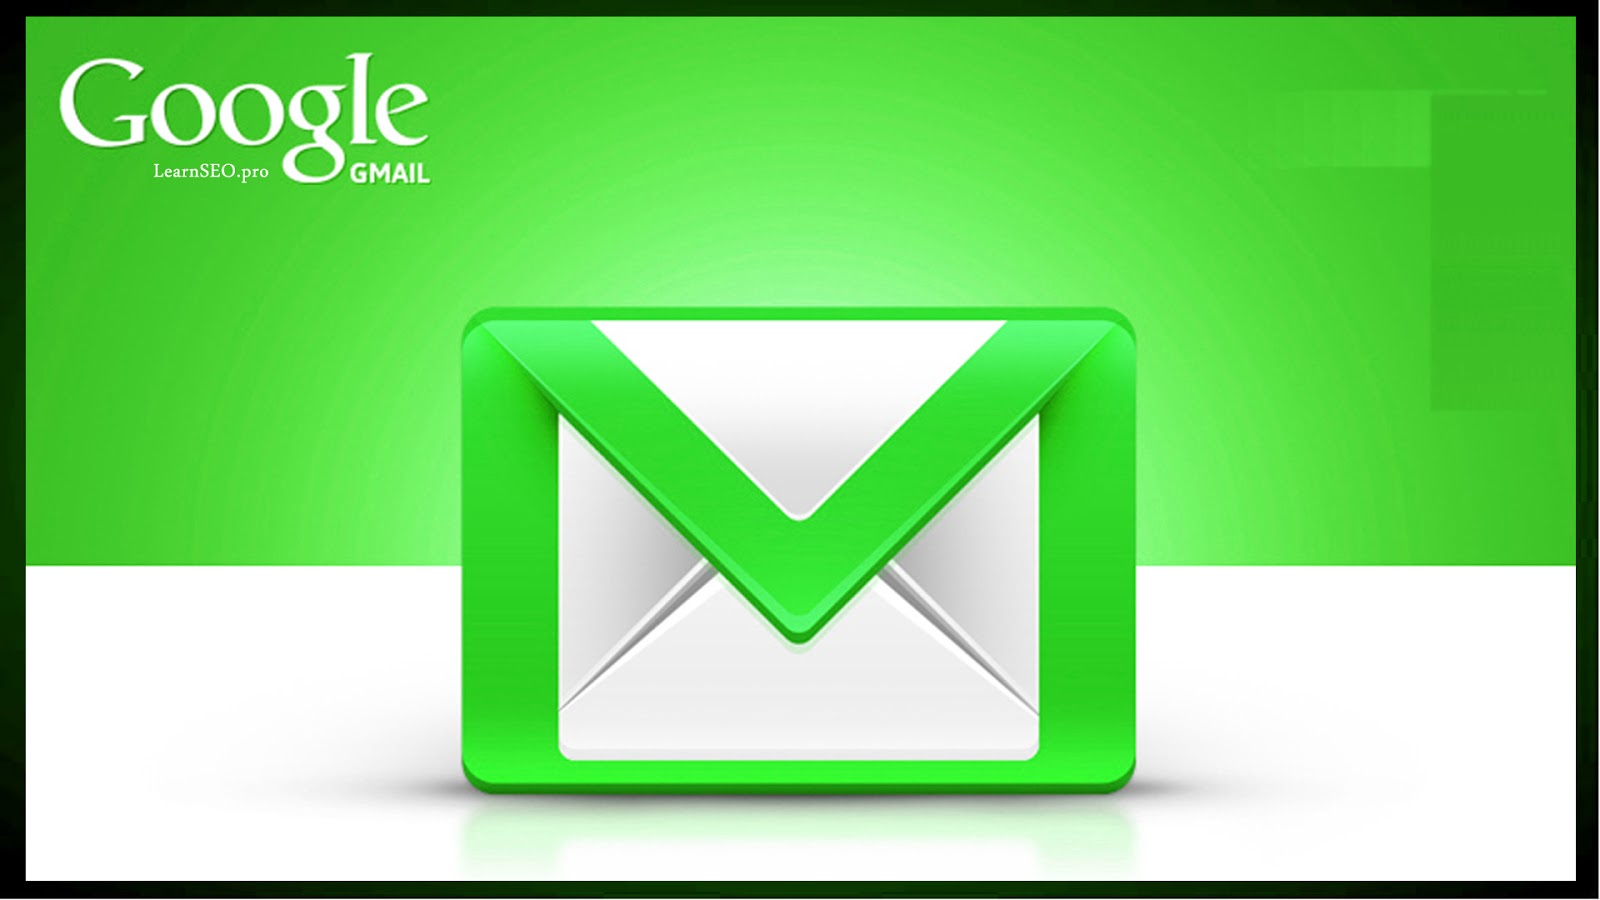 Gmail 24. Gmail картинка. Gamil. Gmail логотип. Обои для gmail.